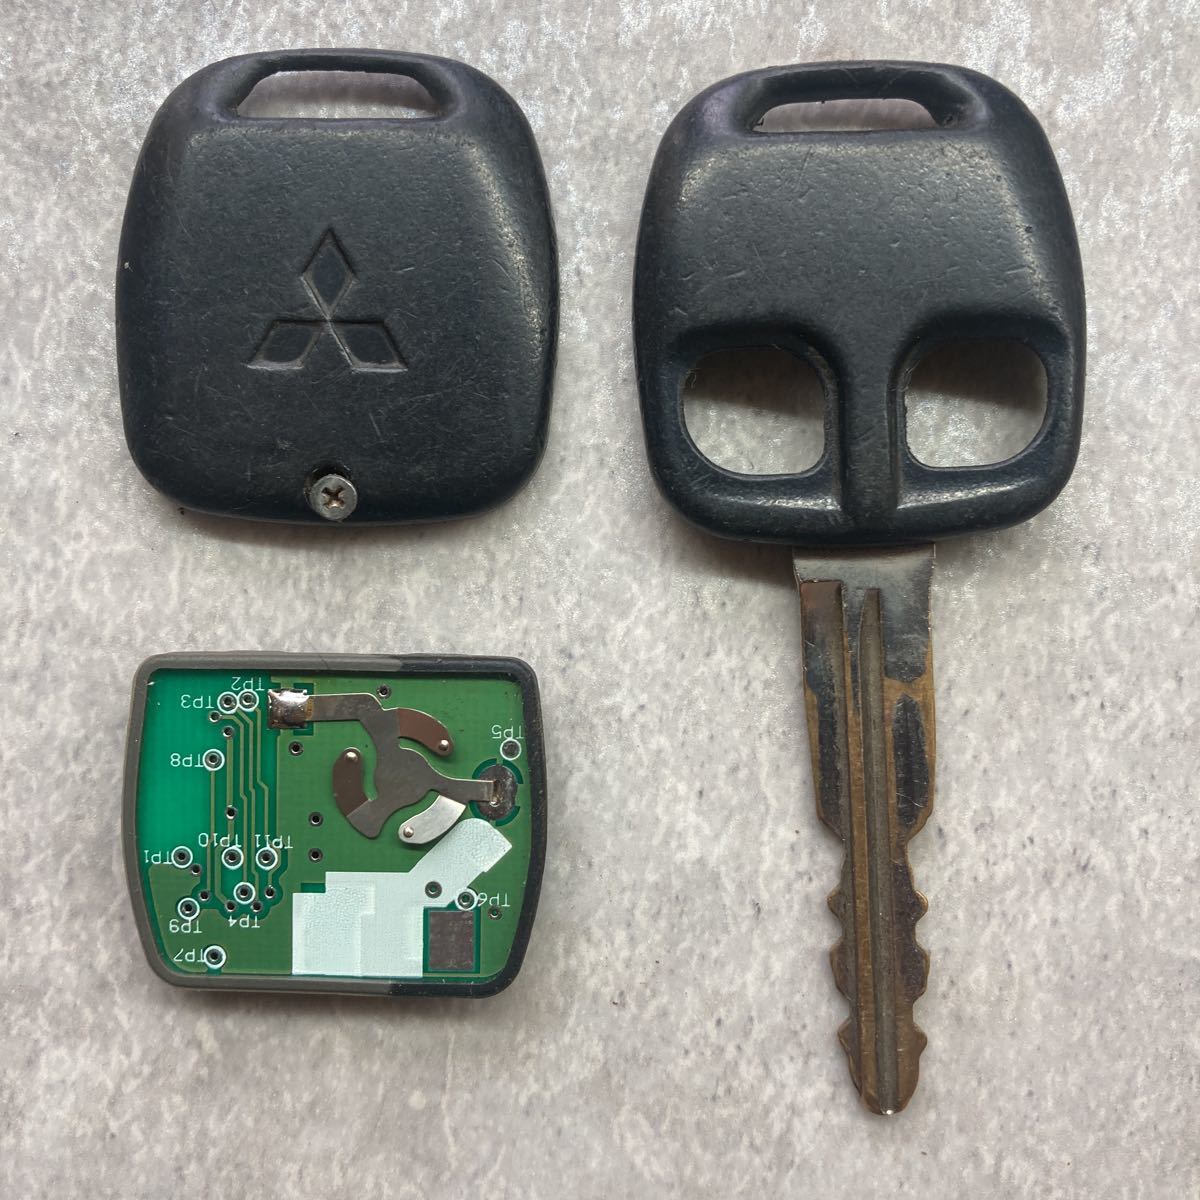  Мицубиси Mitsubishi MITSUBISHI оригинальный дистанционный ключ ключ 2 кнопка старый зеленый основа работоспособность не проверялась Pajero Lancer Delica EK Wagon Minicab Toppo K50850